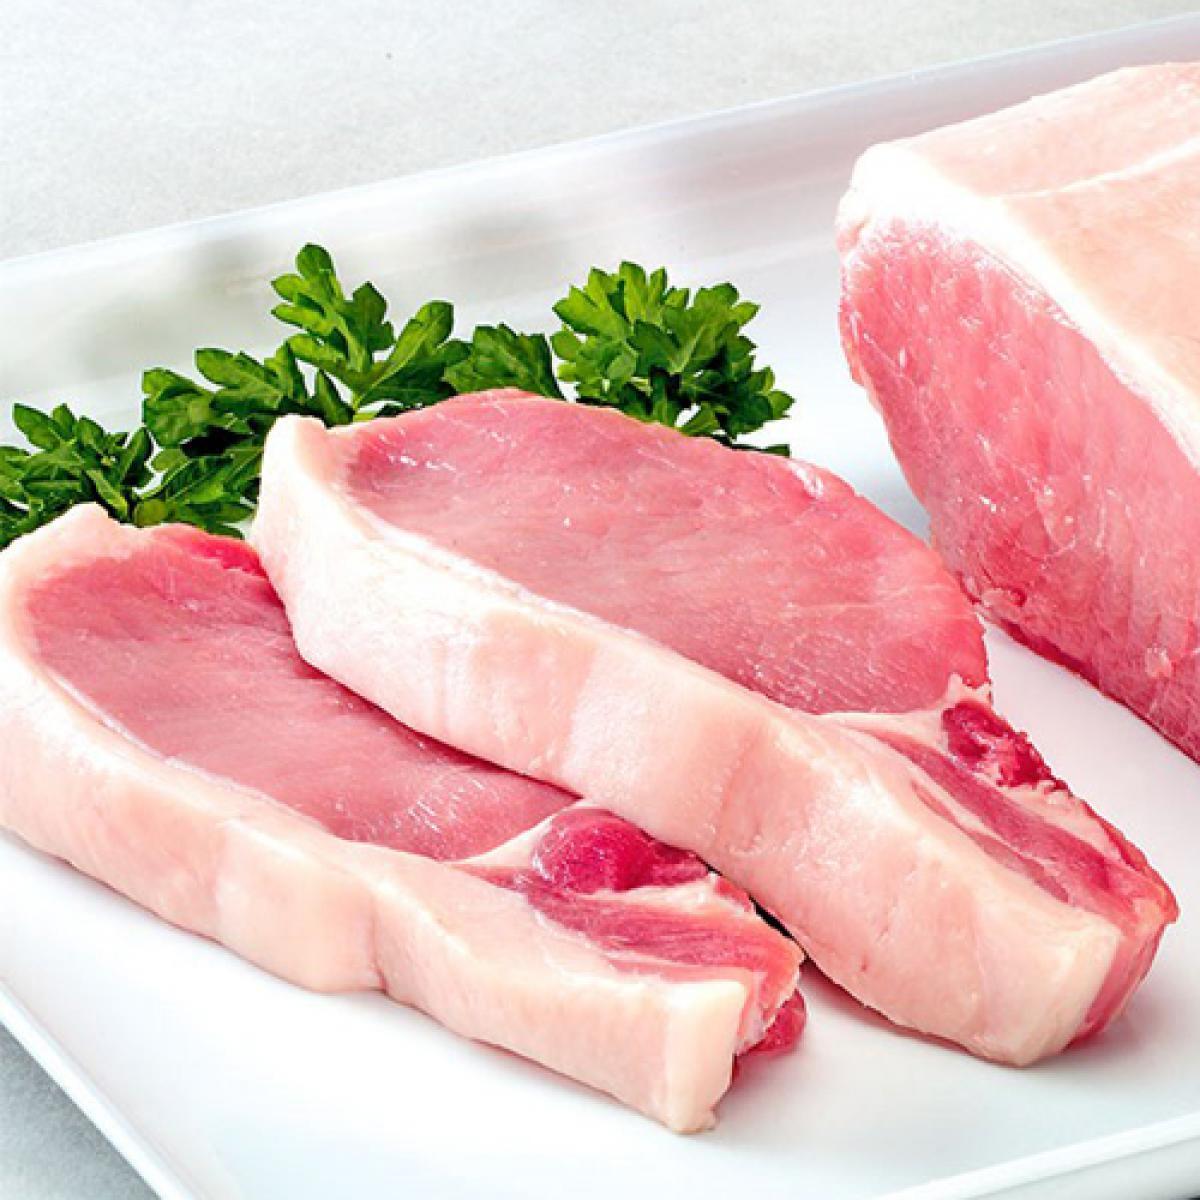 进口猪肉数据解读。我国每年吃掉多少猪肉？影响进口量的主要因素是什么？从哪国进口最多？黑猪和白猪的区别是什么？ - 知乎